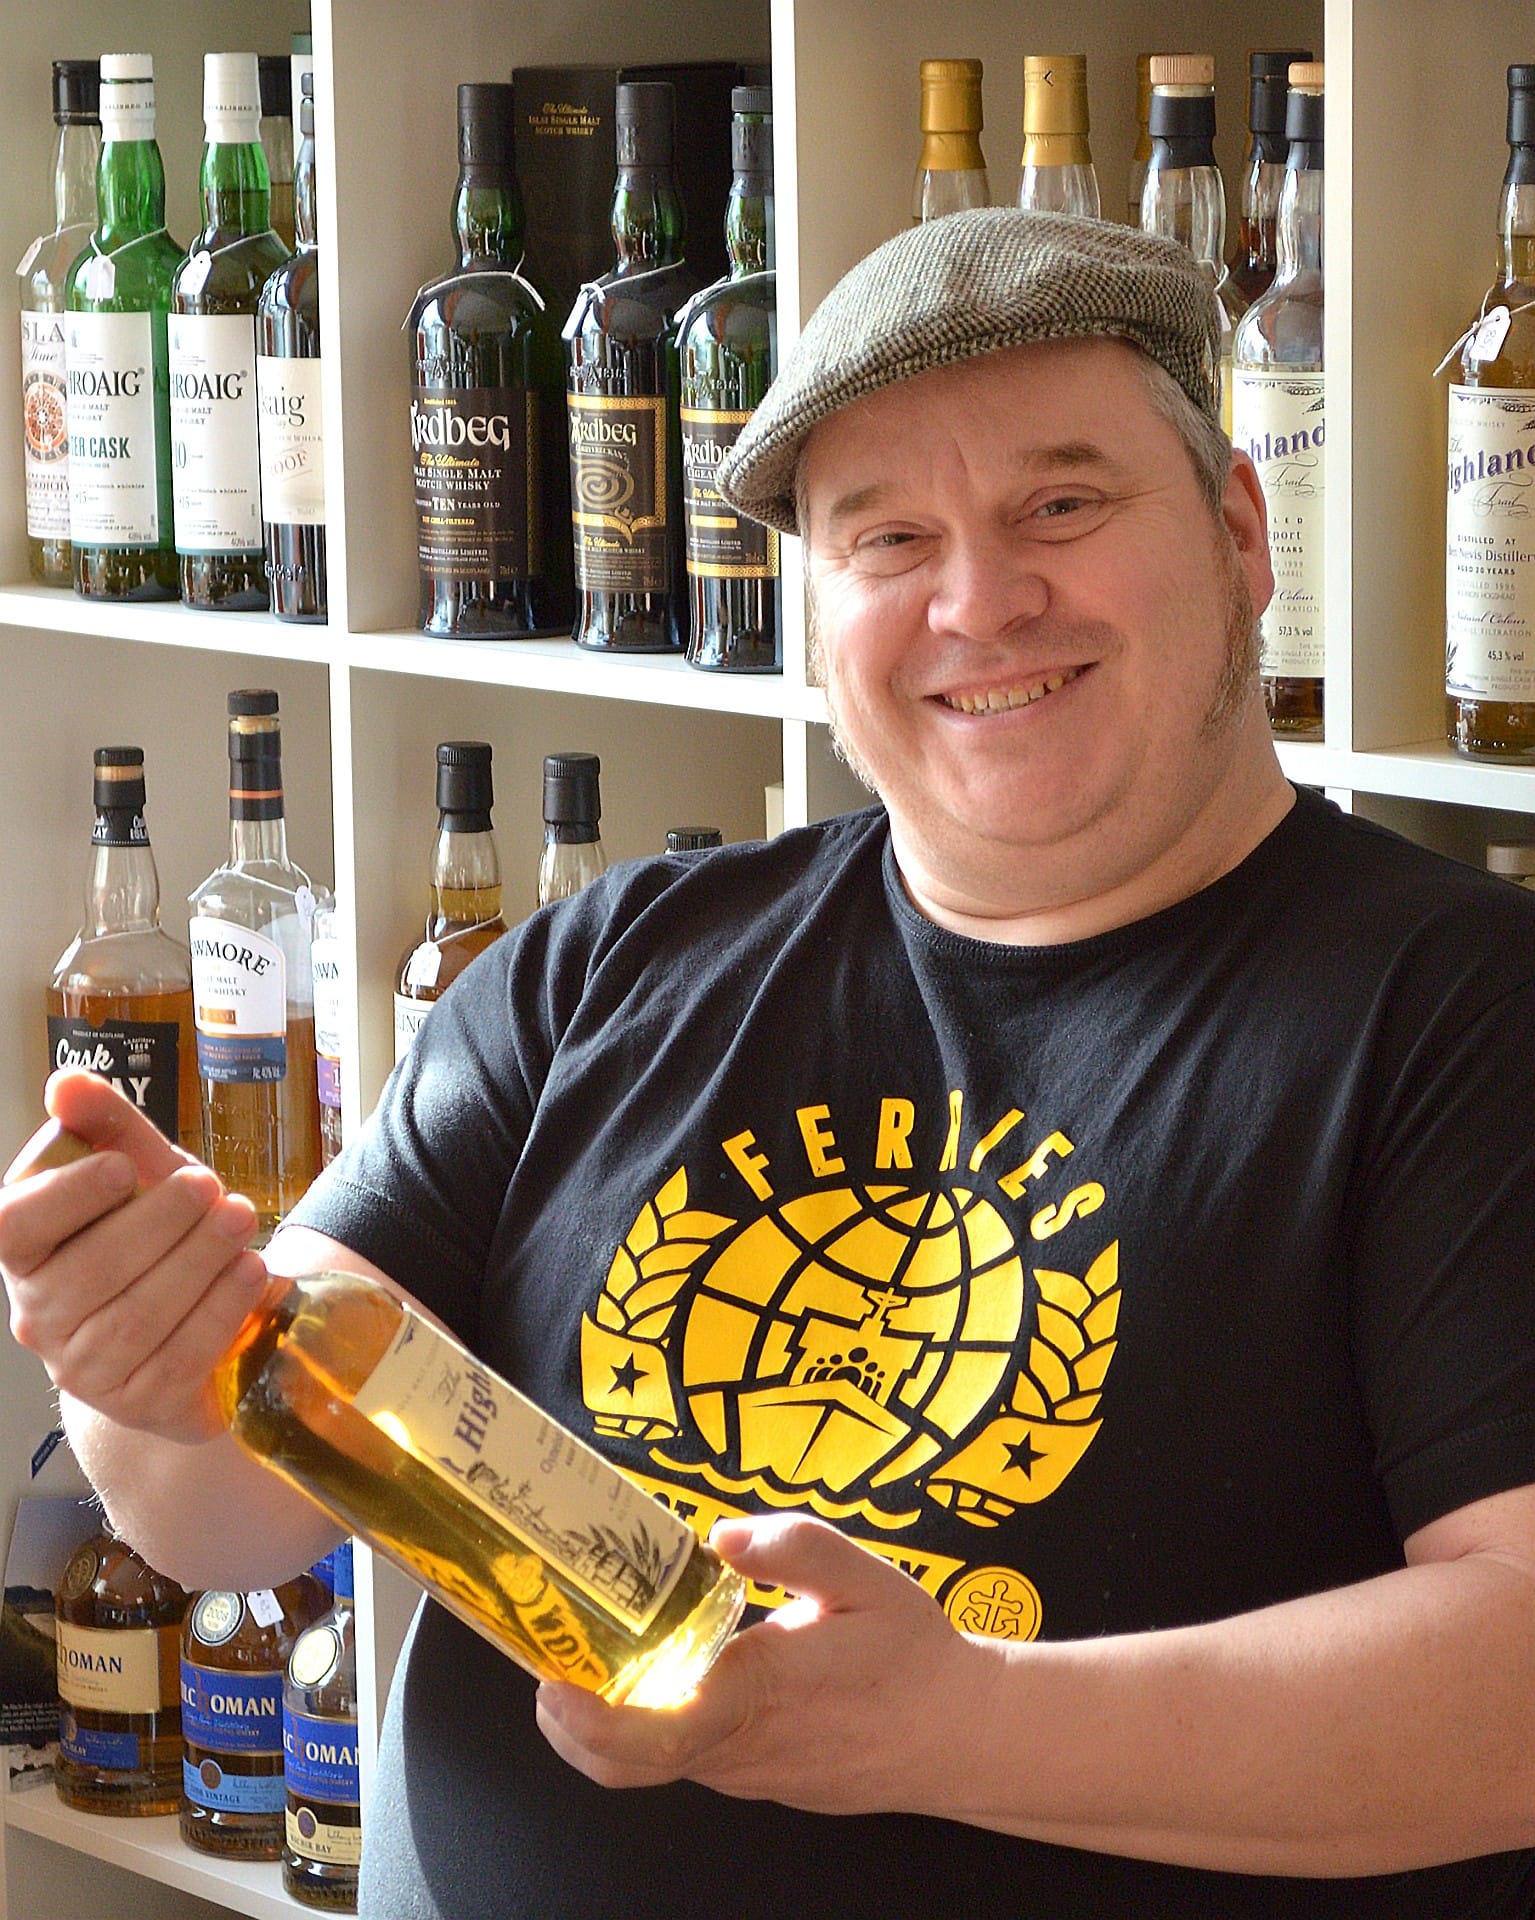 Der Whisky-Experte Peter Reichard führt in seinem Laden "Die Genussverstärker" in Offenbach ein anspruchsvolles Sortiment mit vielen Tastings und Seminaren. Trotz der drastischen Preissteigerungen gäbe es außerhalb Schottlands noch viele unentdeckte Brennereien mit feinen Sorten, betont er.